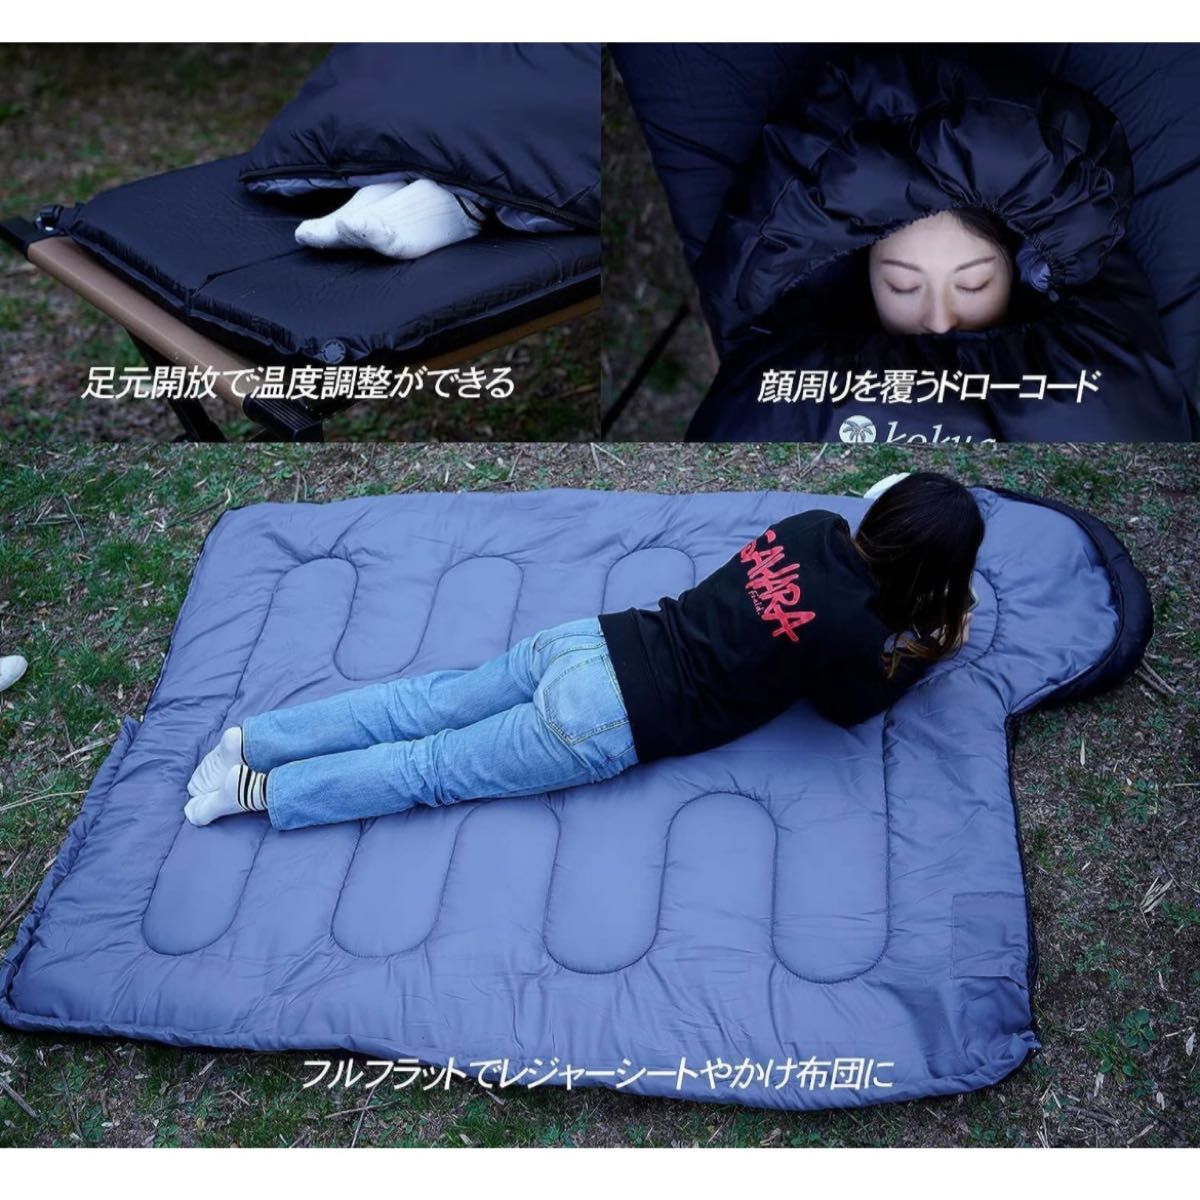 【新品】寝袋 オールシーズン シュラフ 寝袋 コンパクト 封筒型 軽量 保温 210T 限界使用温度-15℃ アウトドア